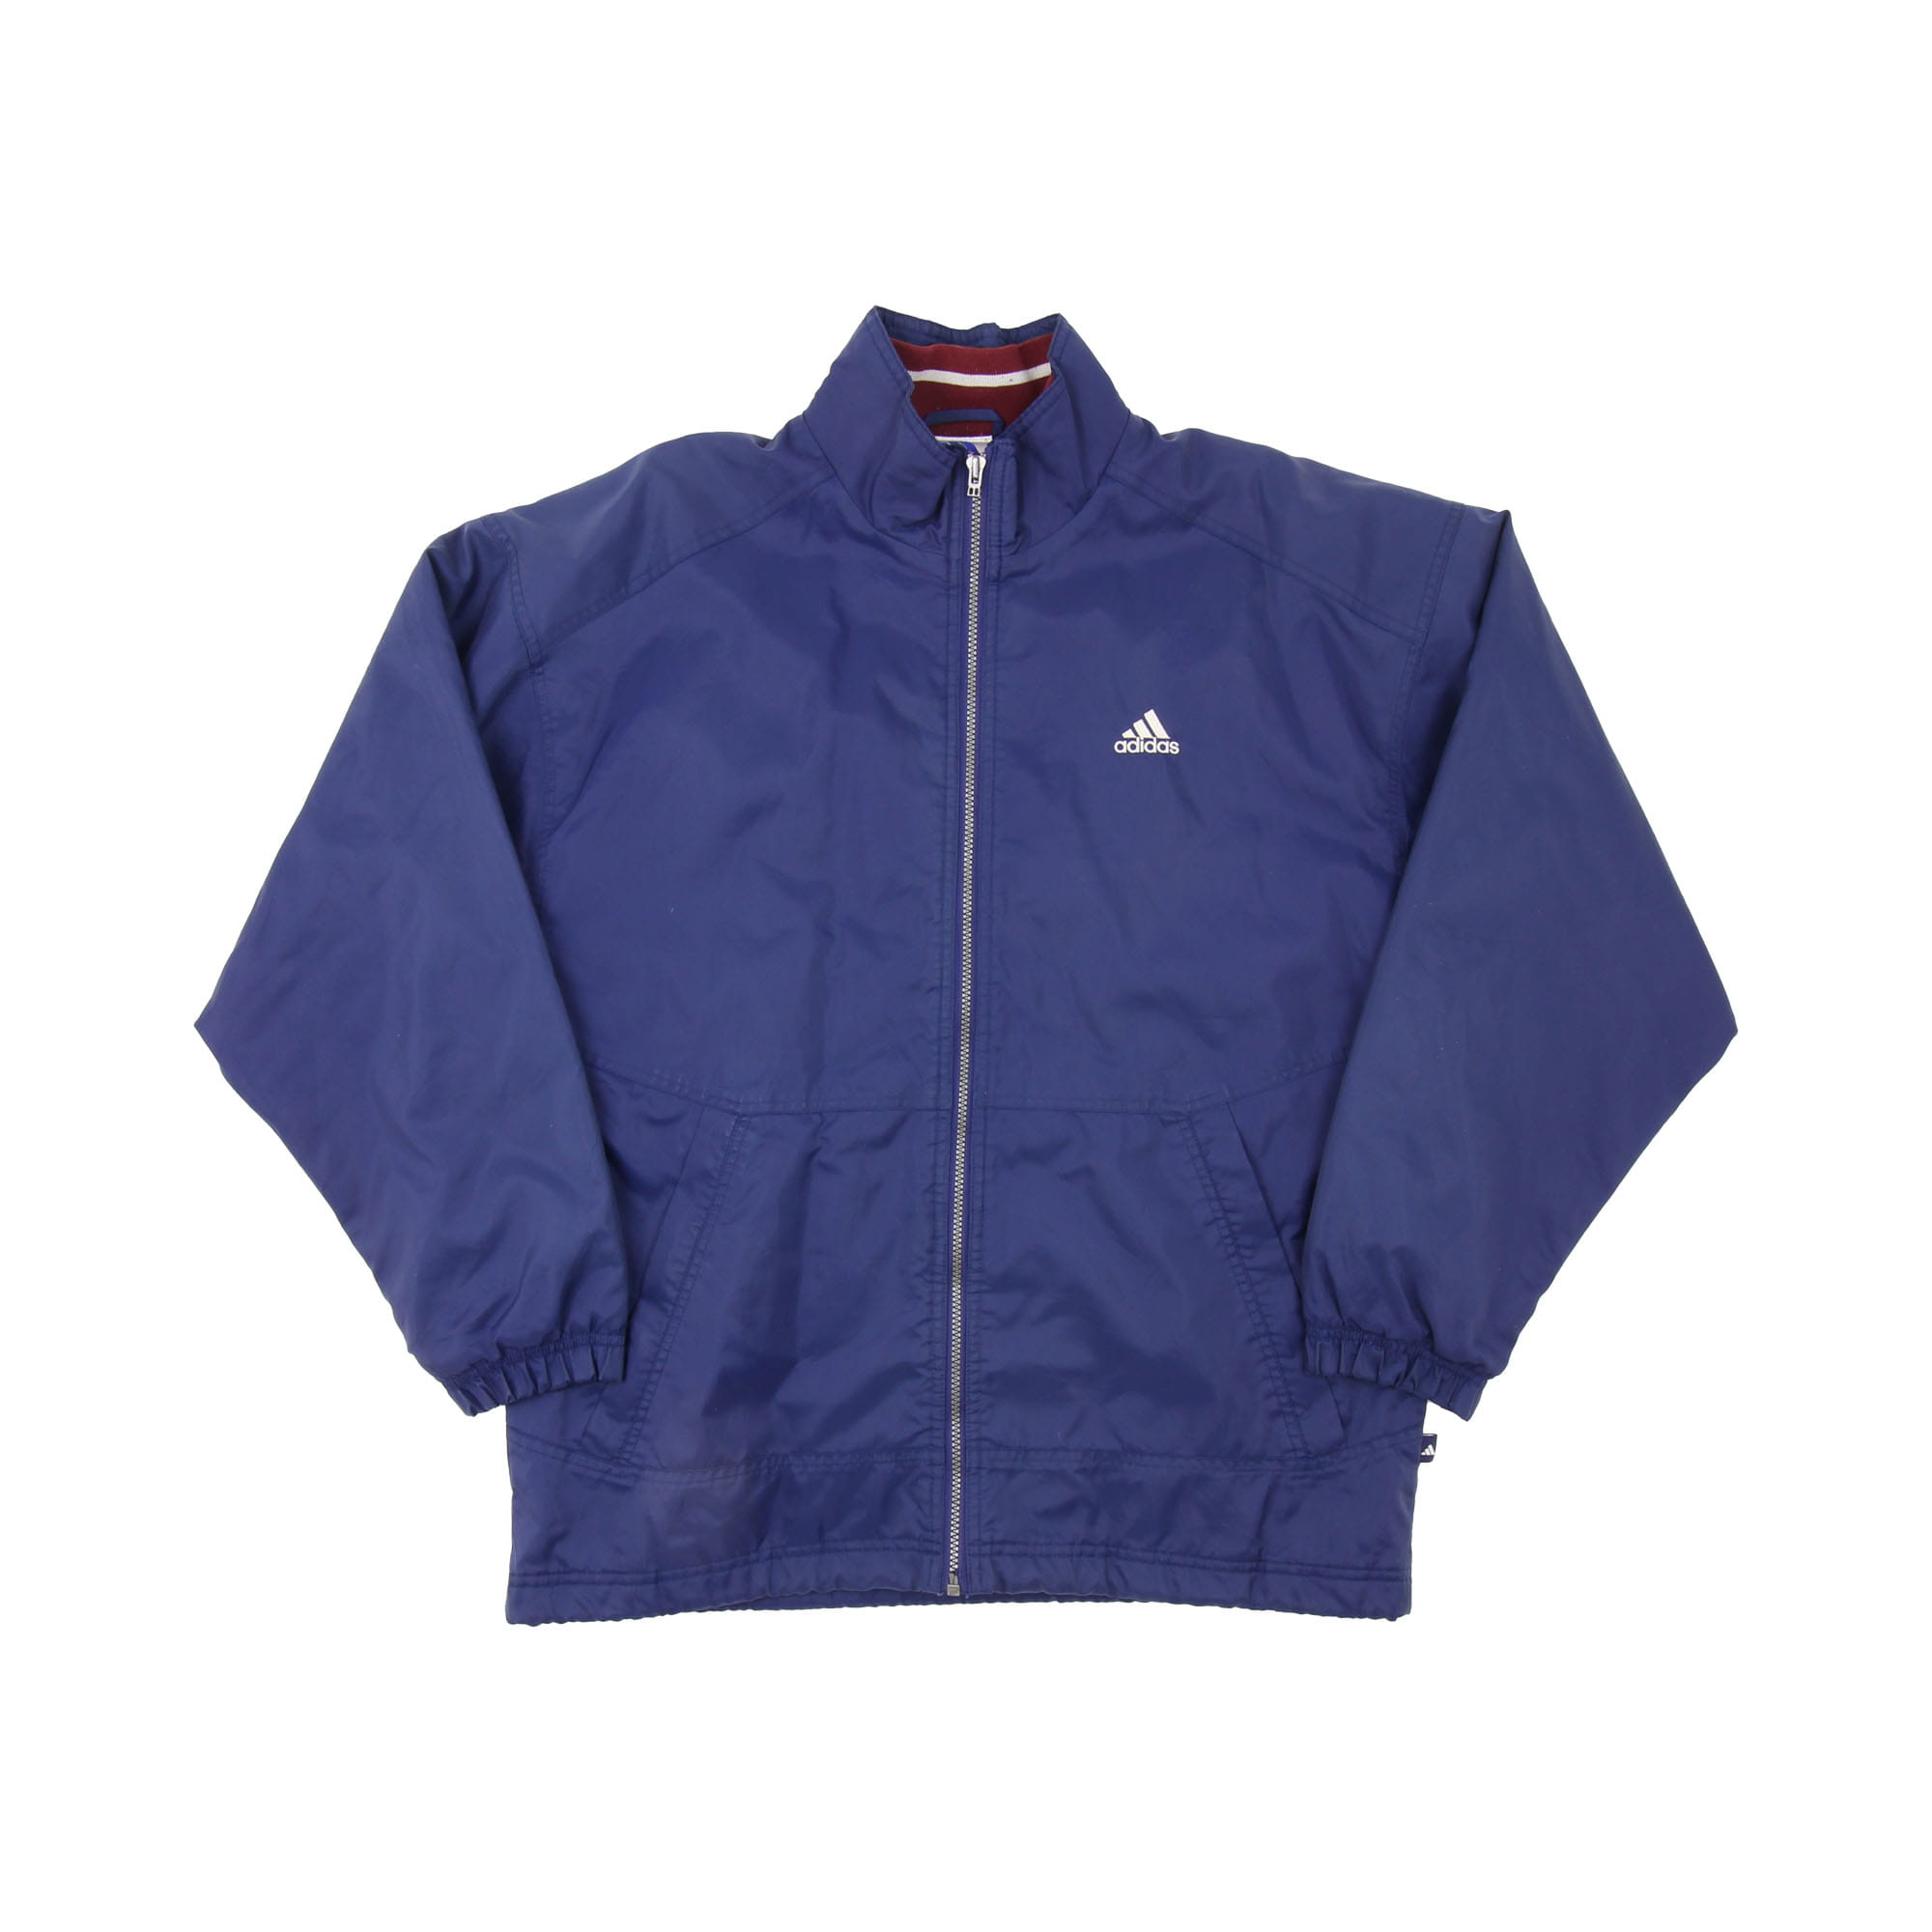 Adidas Full Zip Wind Jacket -  XL